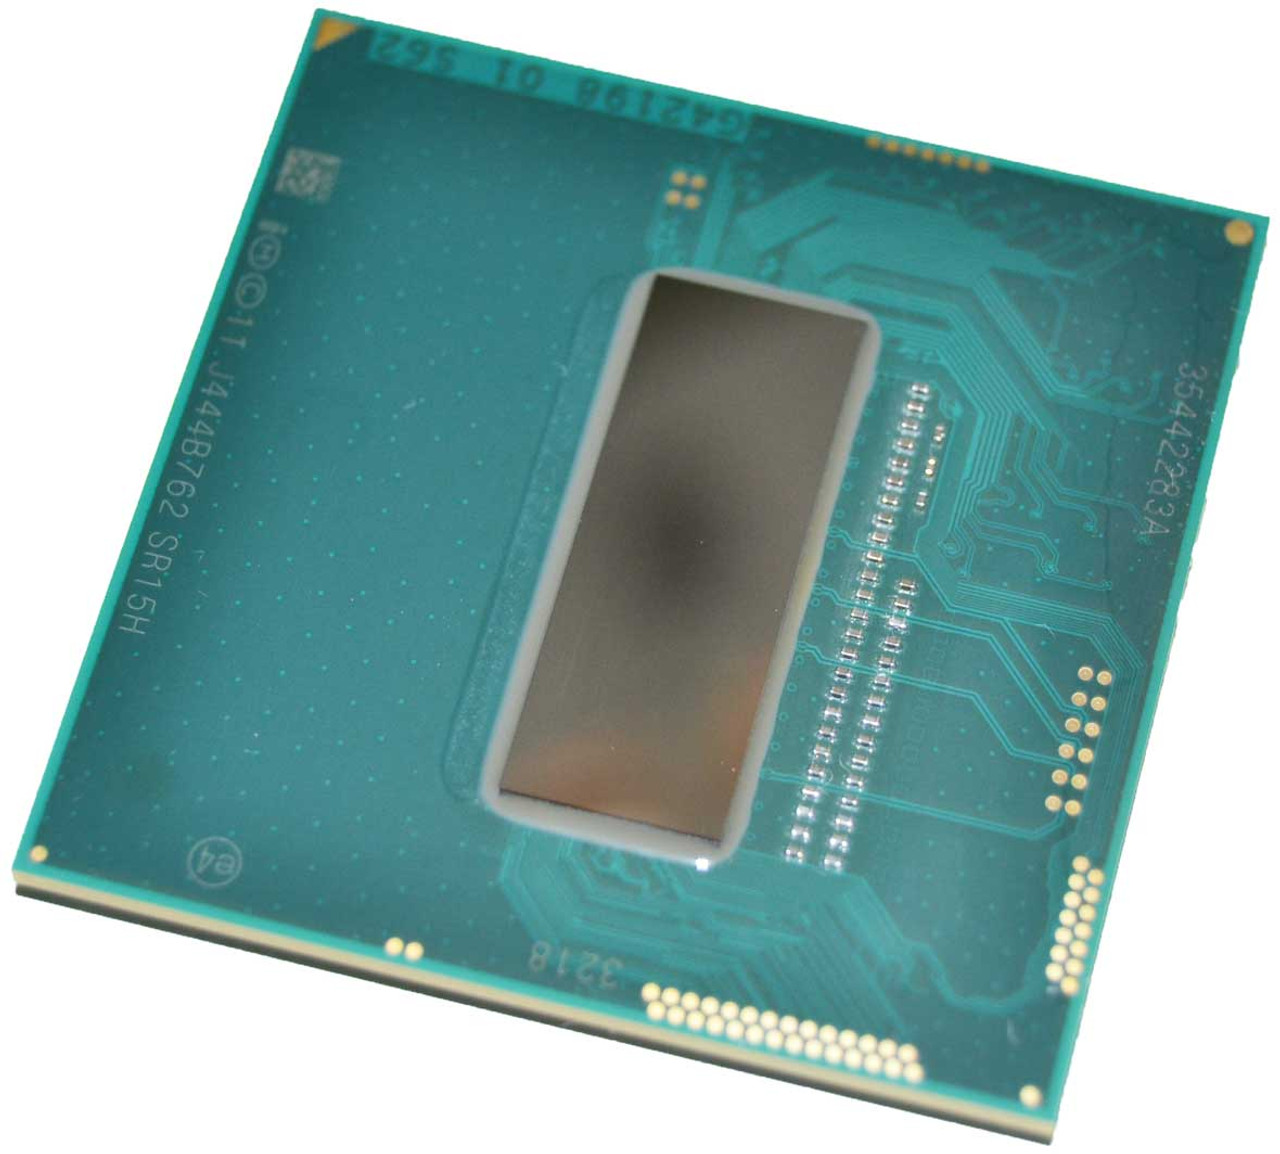 Intel Core i7 4700MQ CPU